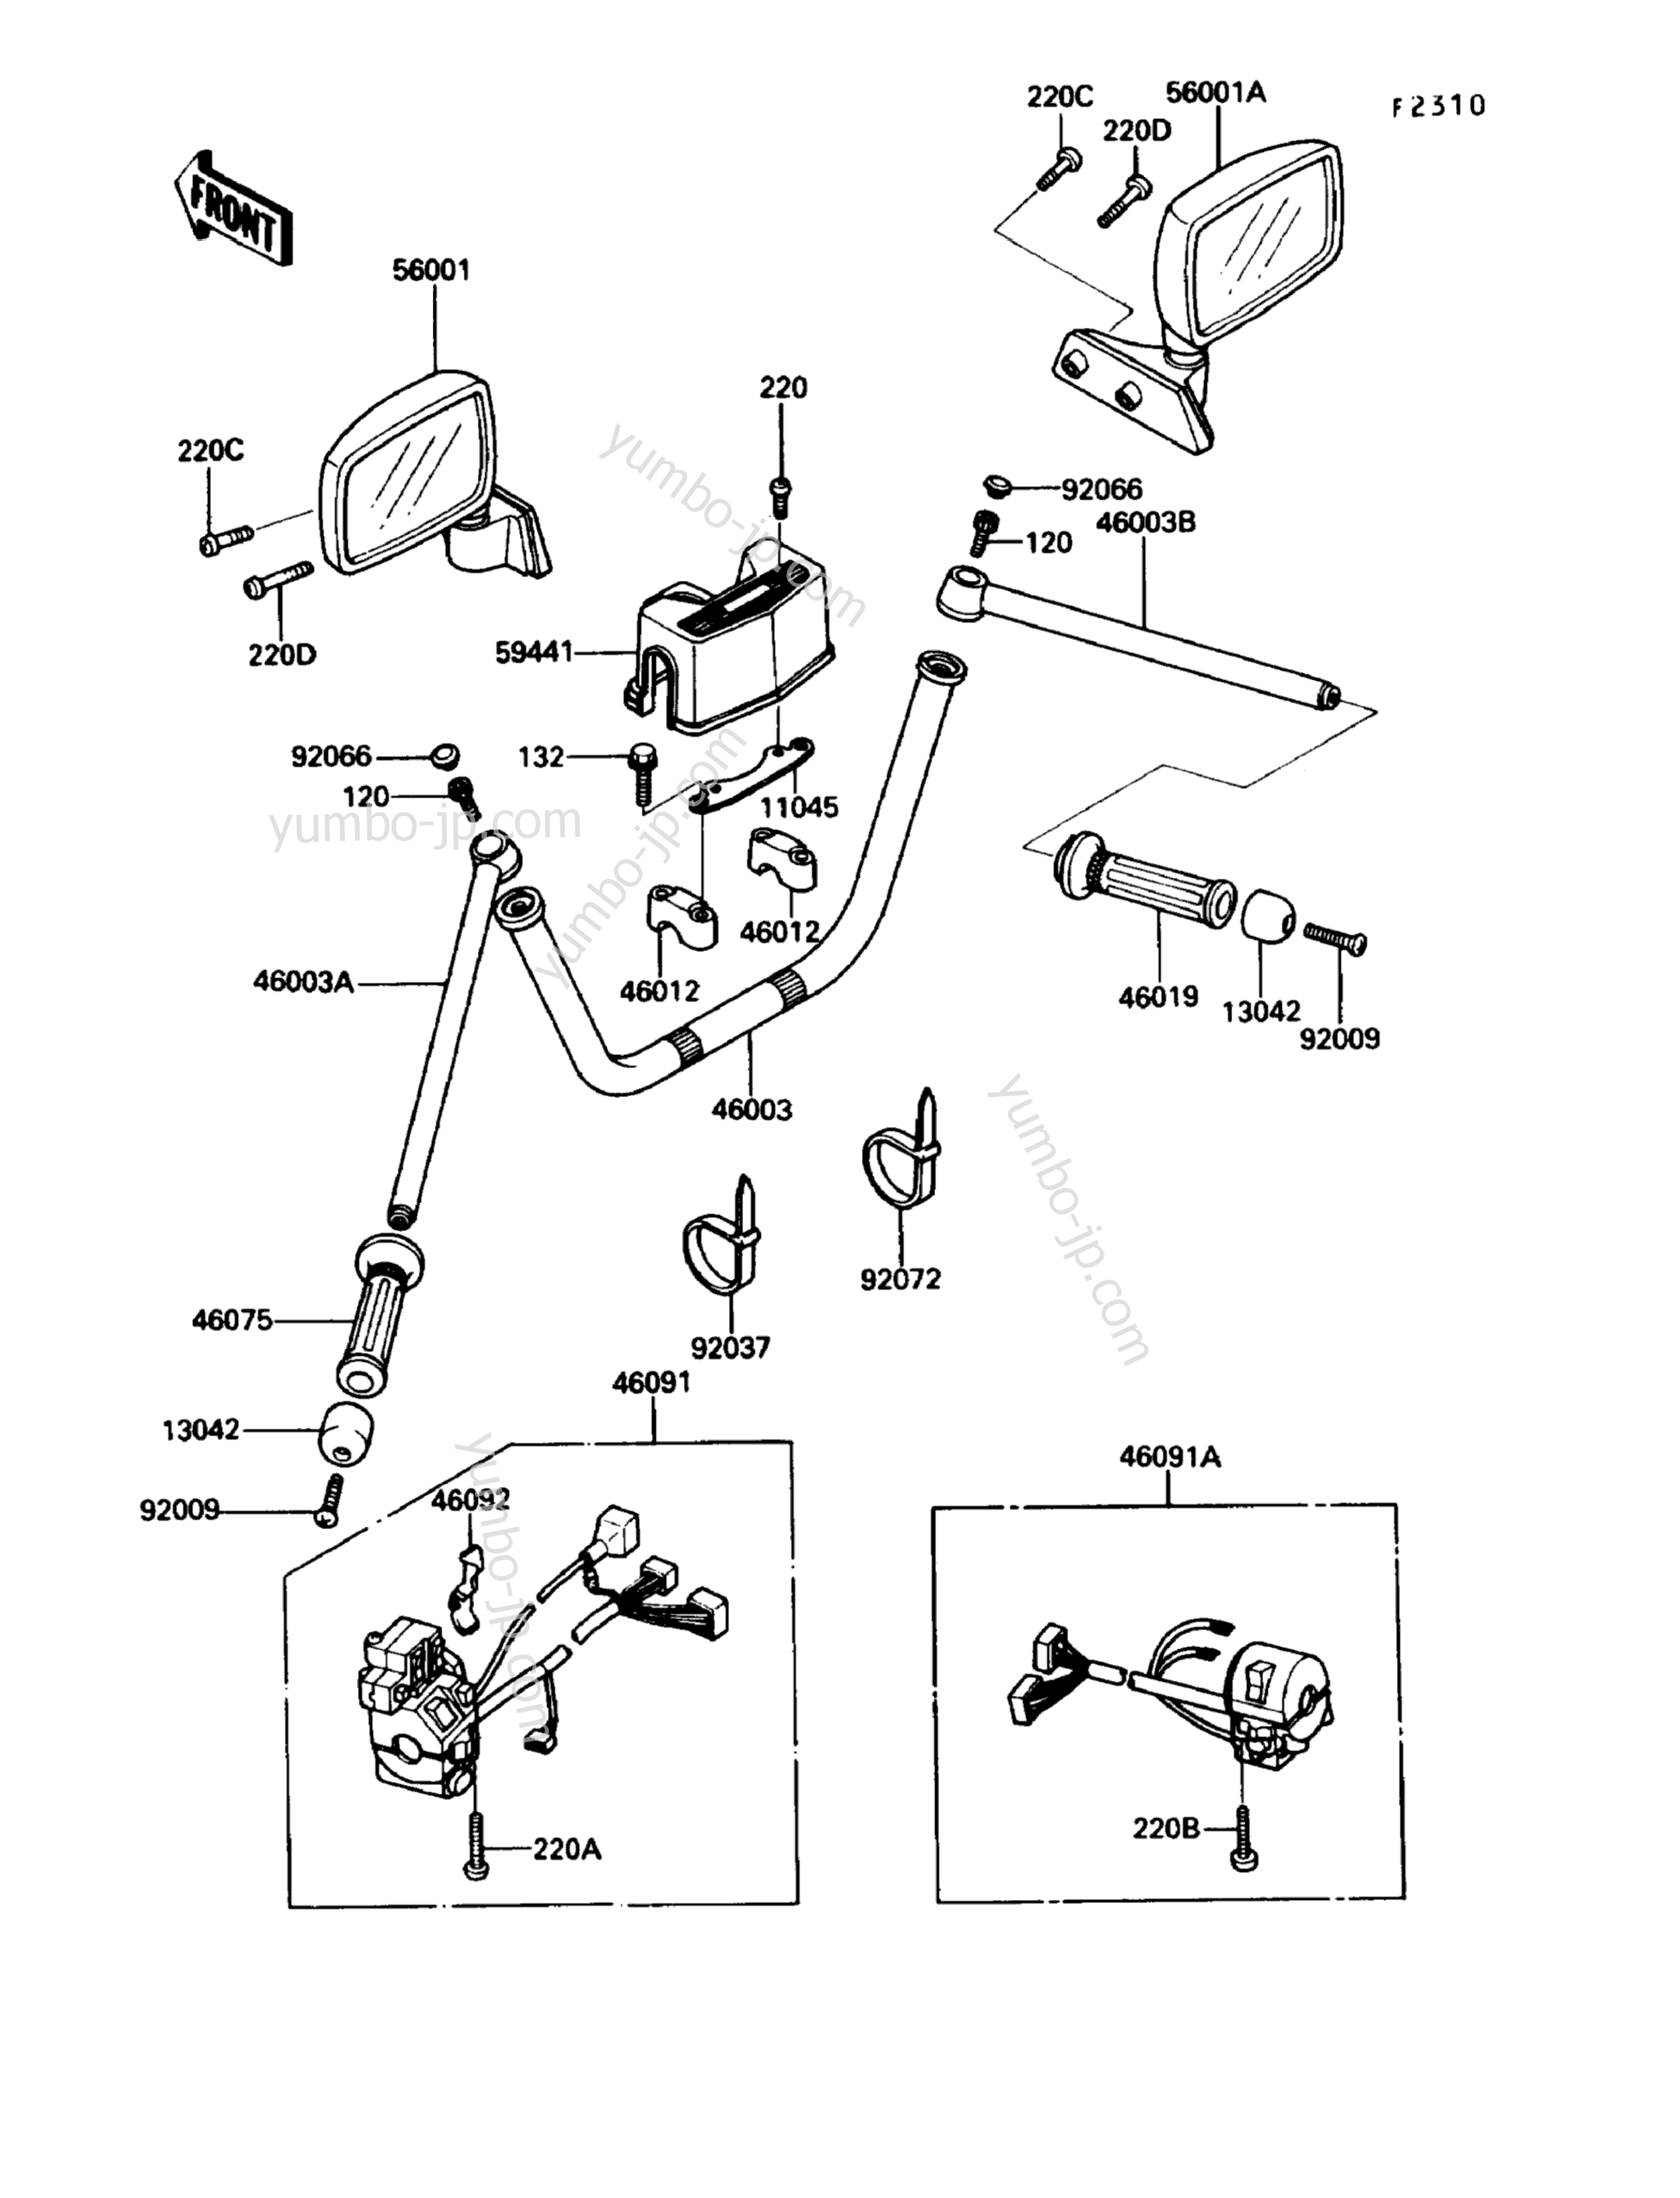 Румпель (рукоятка управления) для мотоциклов KAWASAKI VOYAGER XII (ZG1200-B4) 1990 г.